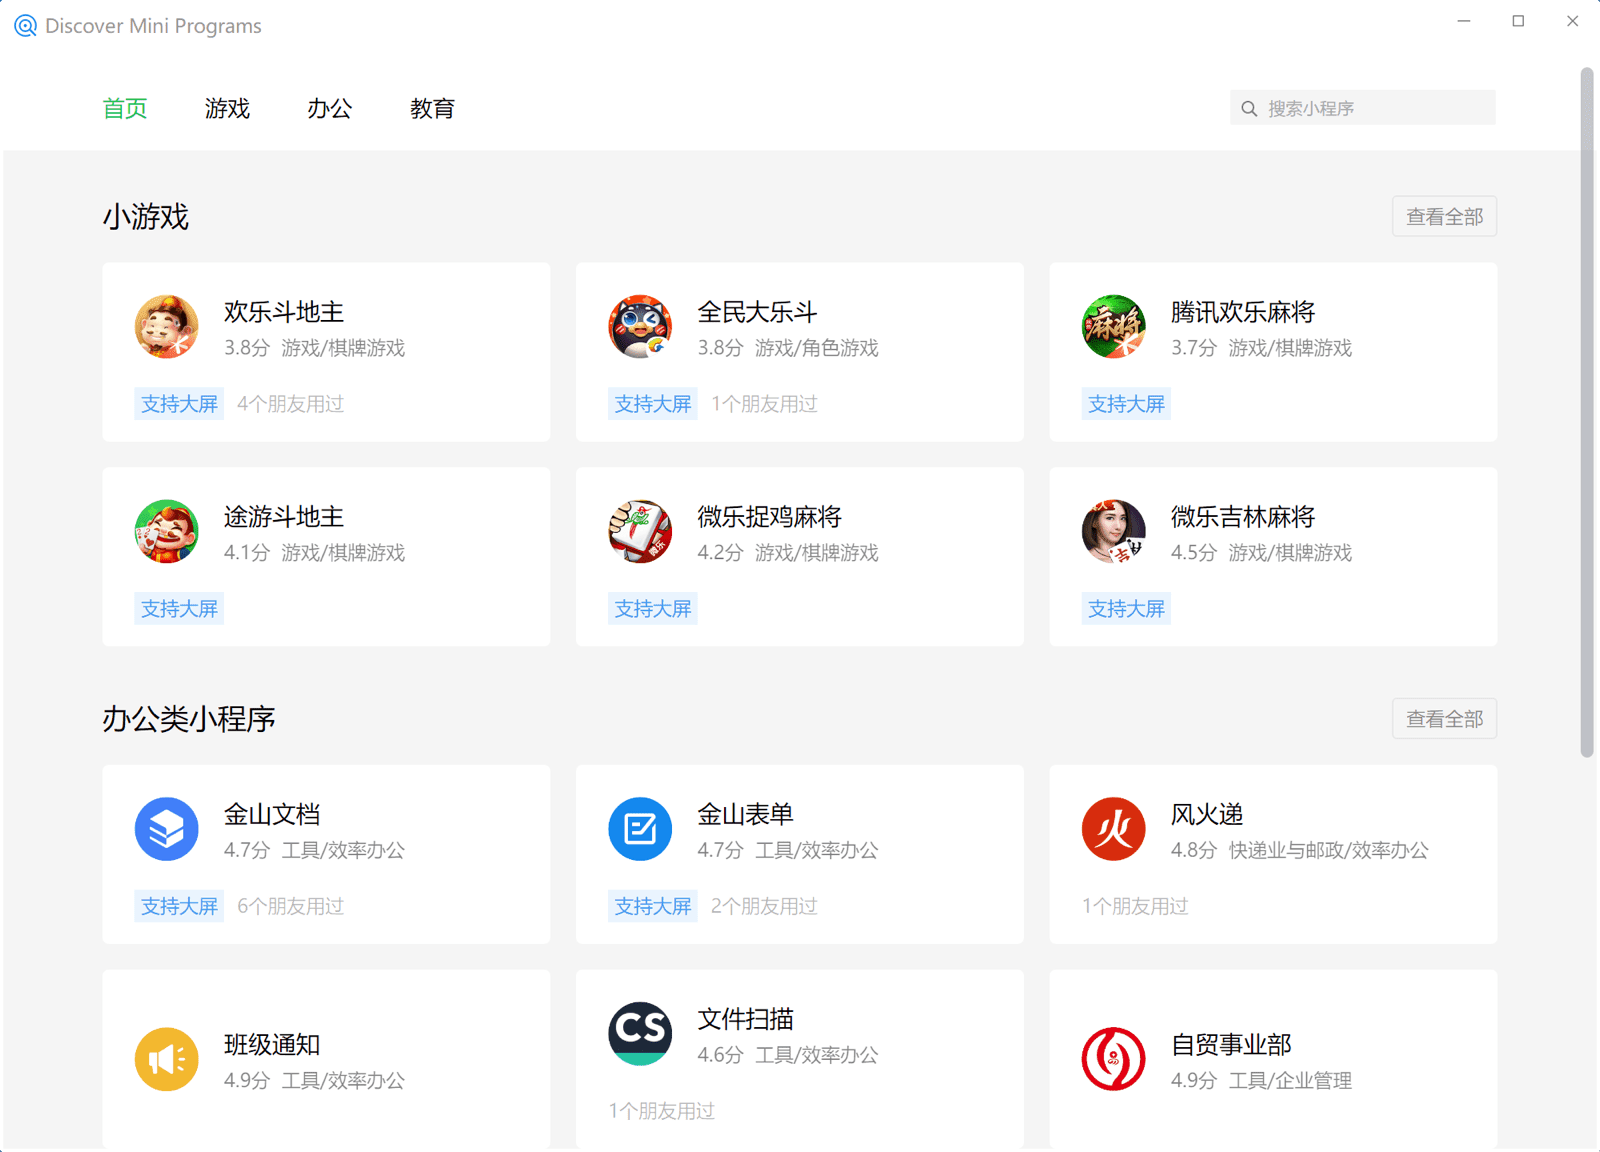 חיפוש של מיני אפליקציות בלקוח WeChat Windows, שבו מוצגות אפליקציות מיני ברשימה בקטגוריות שונות כמו משחקים, עסקים, מוסדות חינוך וכו&#39;.